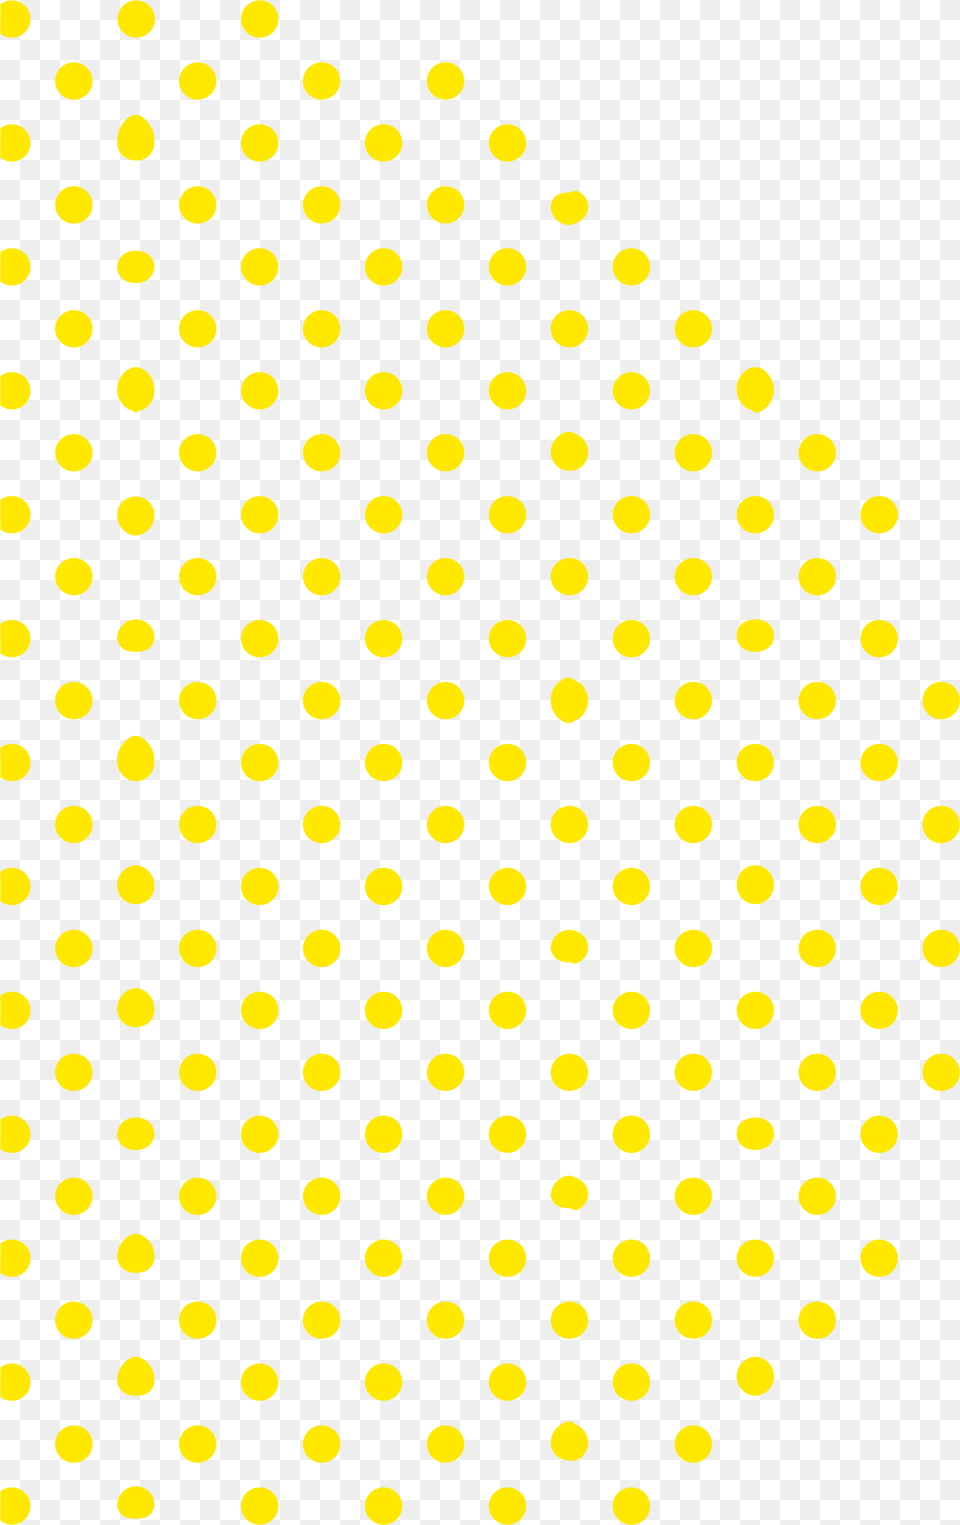 Polka Dots Download Polka Dot, Pattern, Polka Dot Free Transparent Png